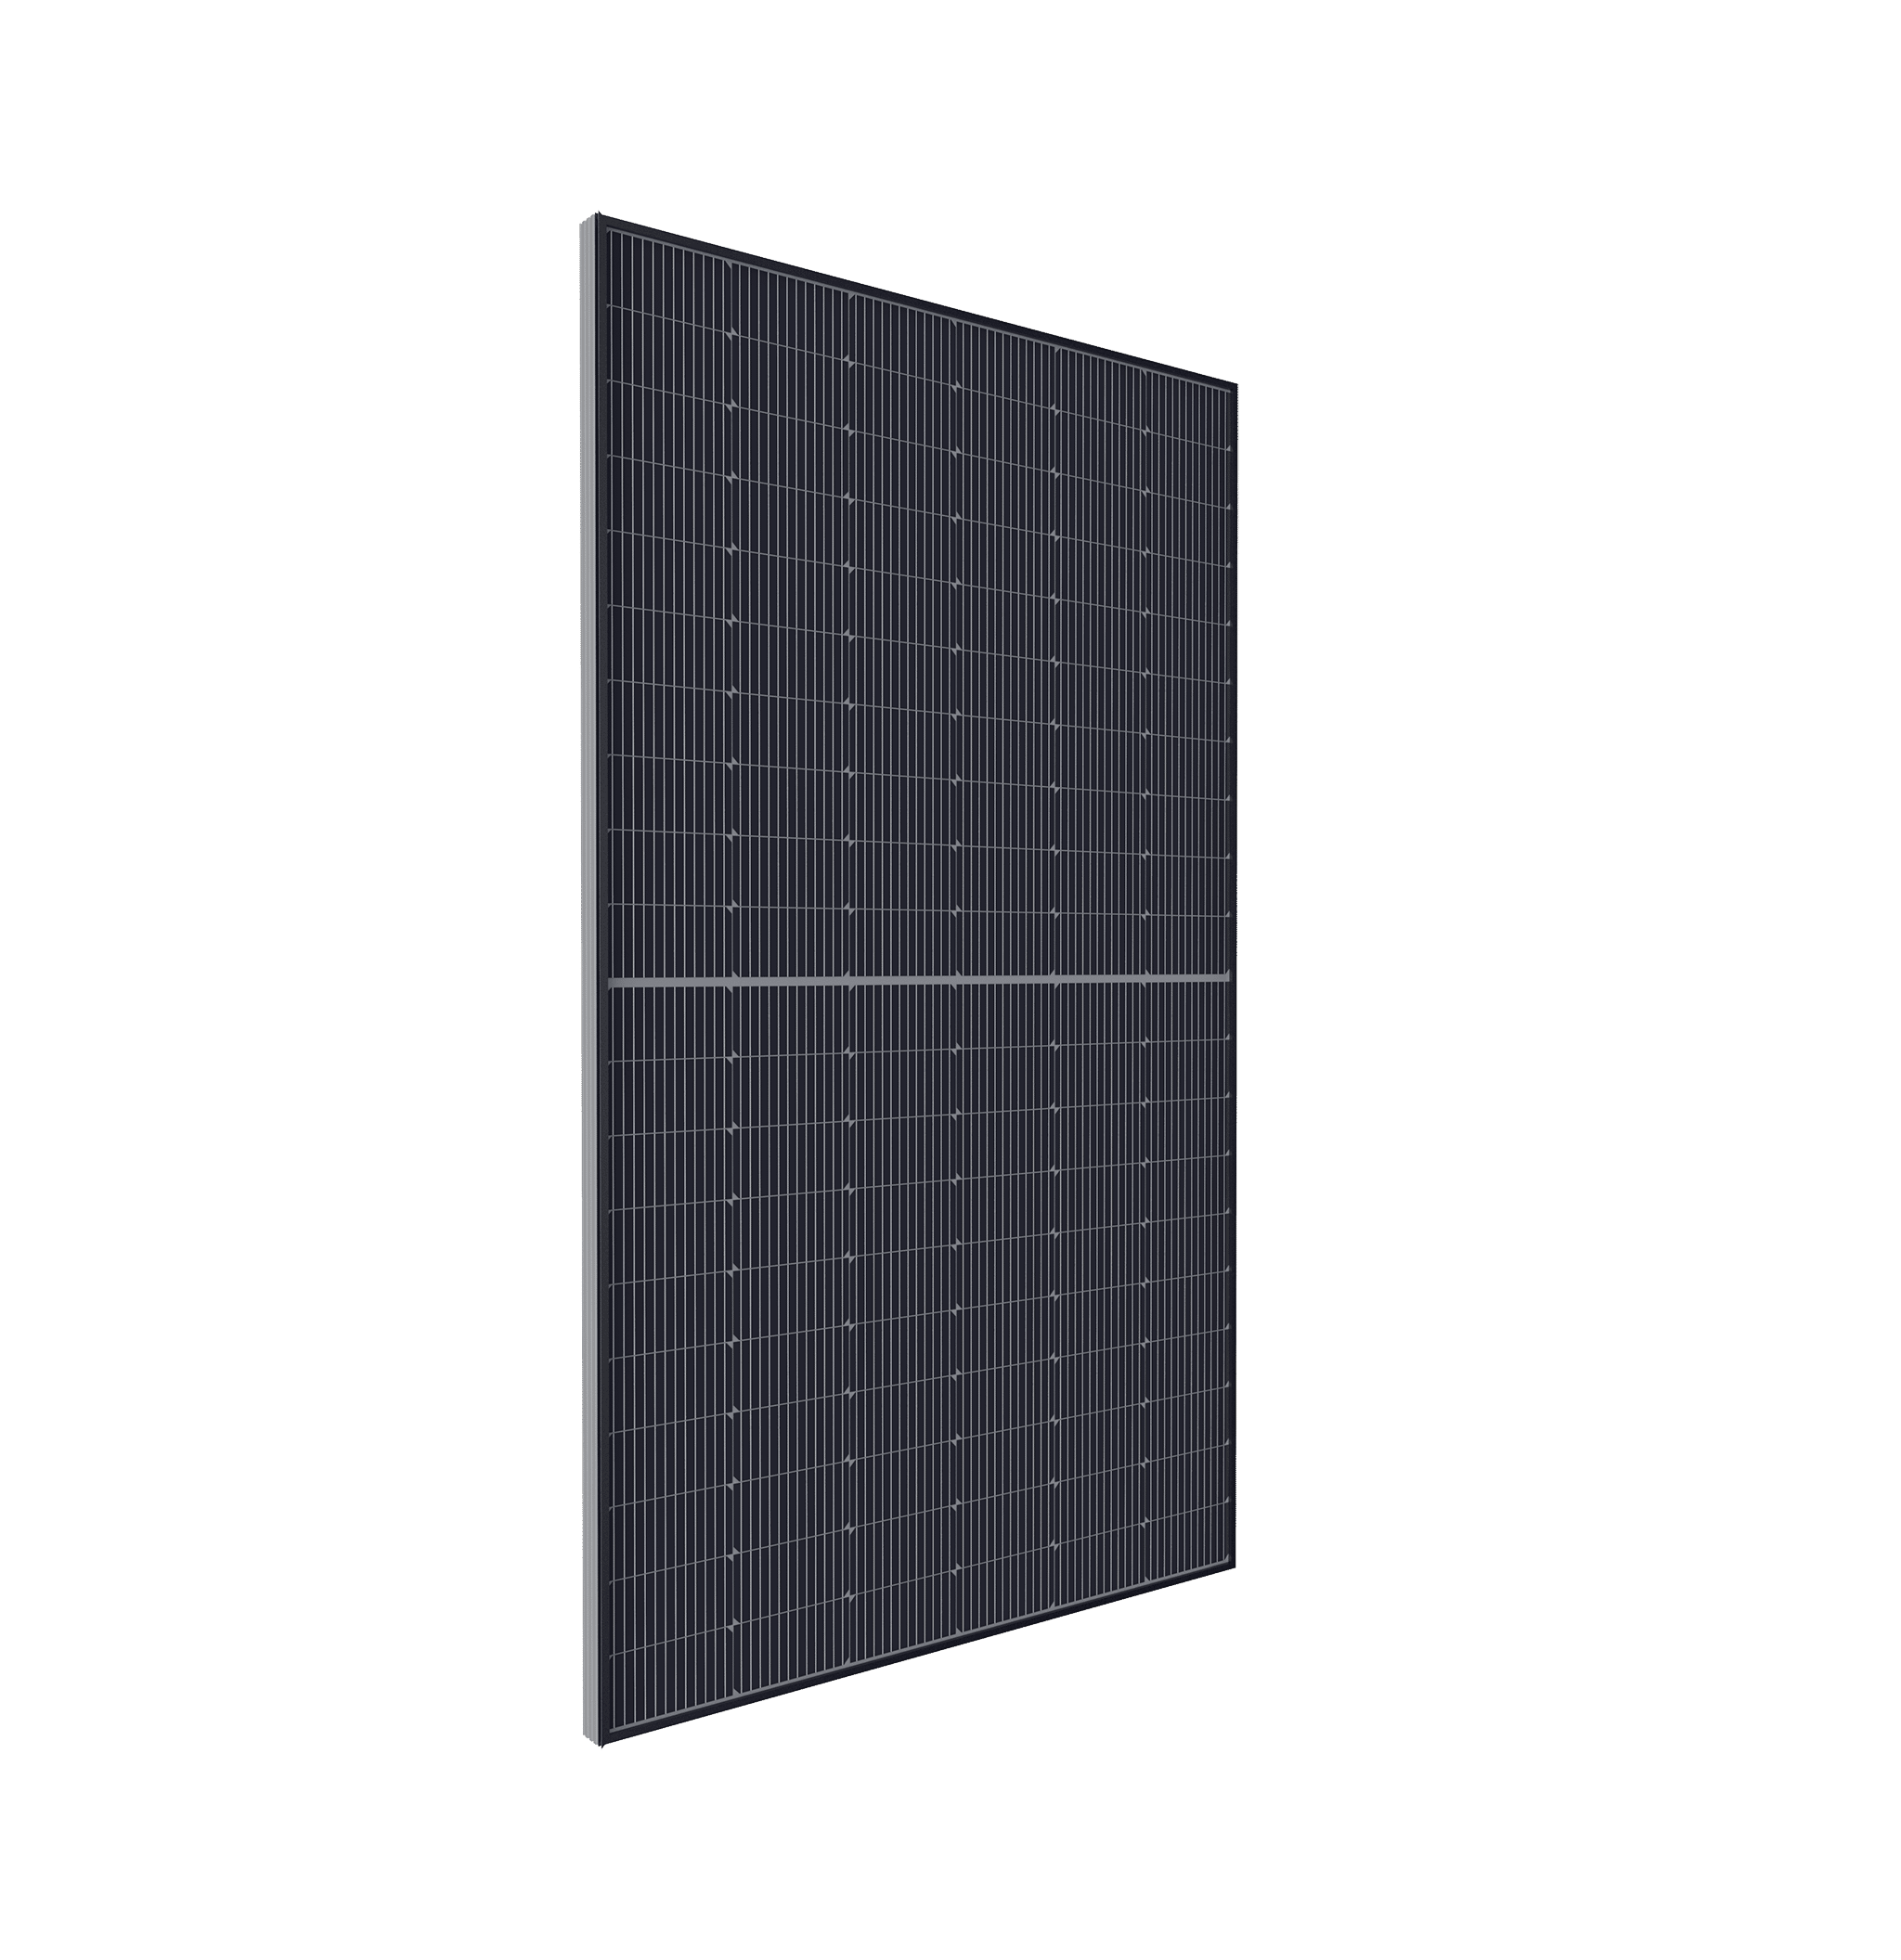 Panneau solaire DUONERGY HJT 375 vue de profil